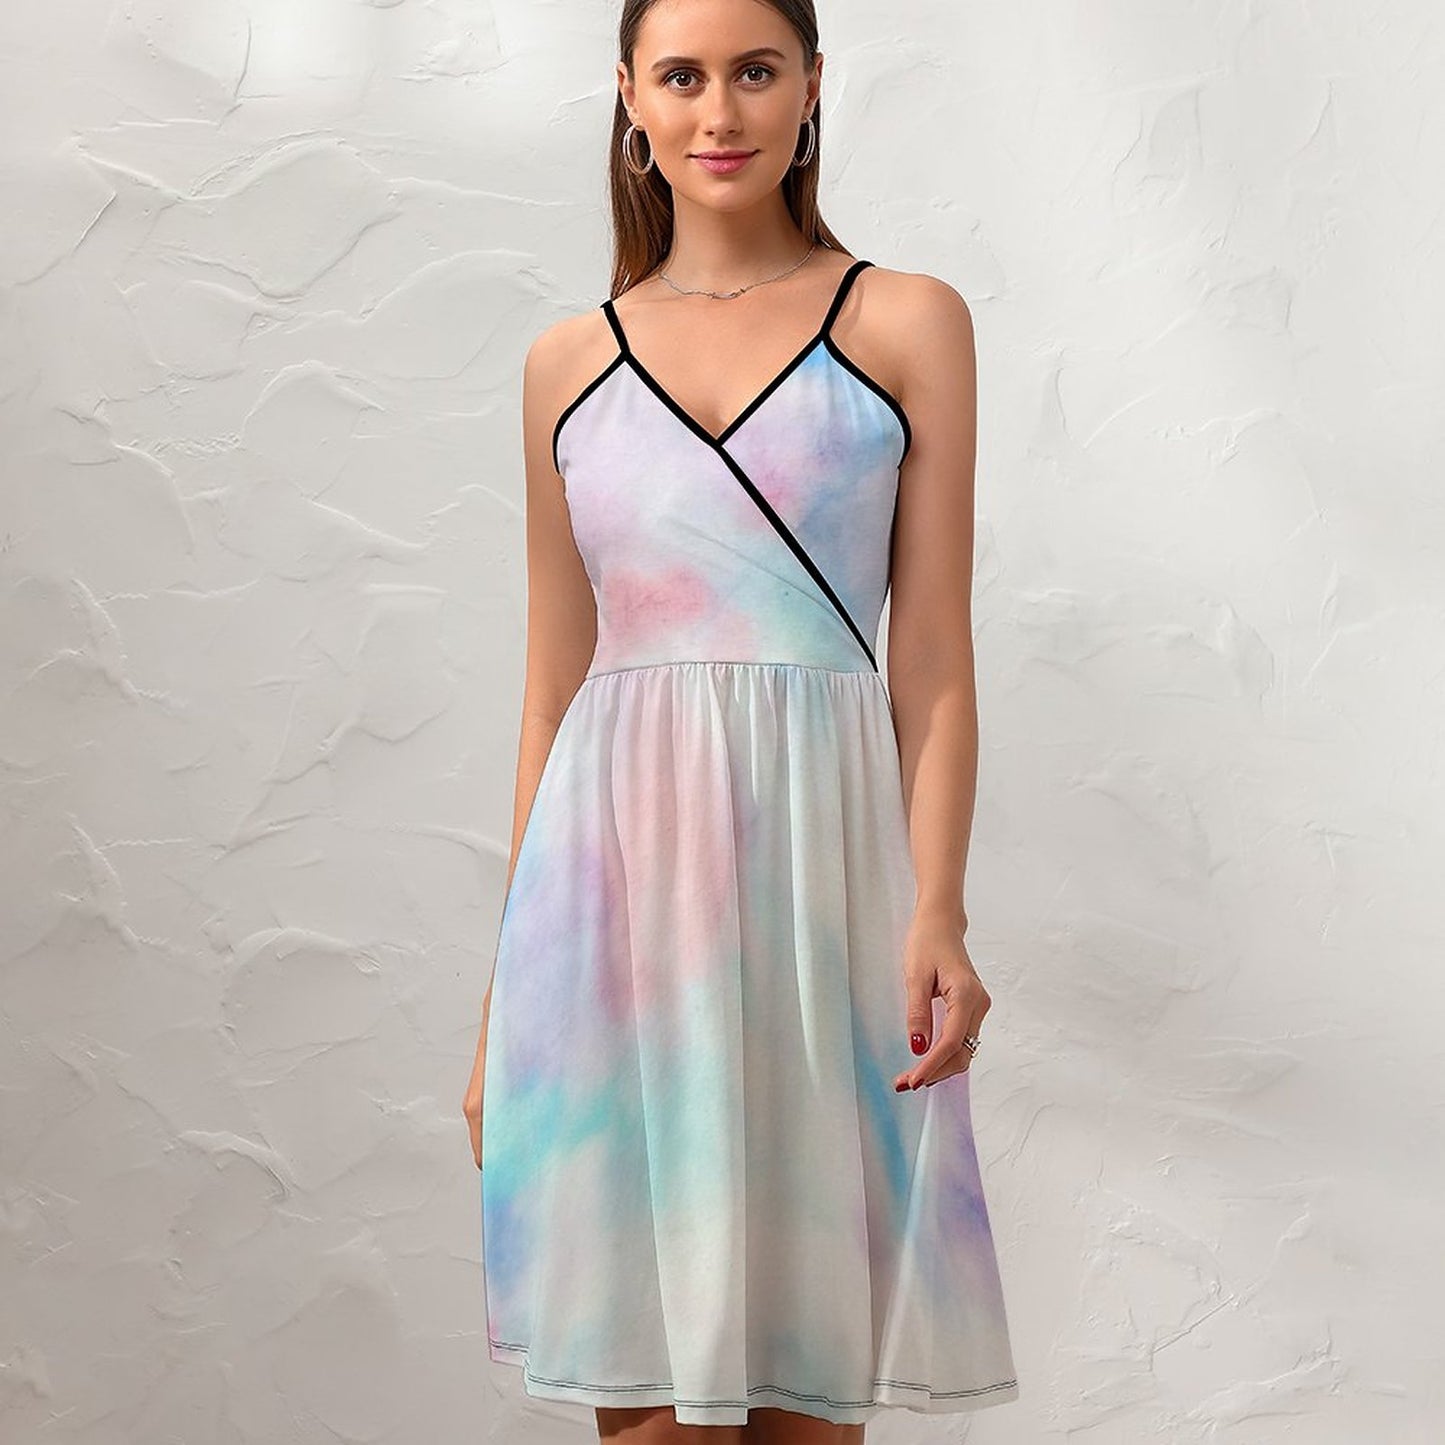 Online DIY Dress for Women Women's Sling Dress Tie-Dye